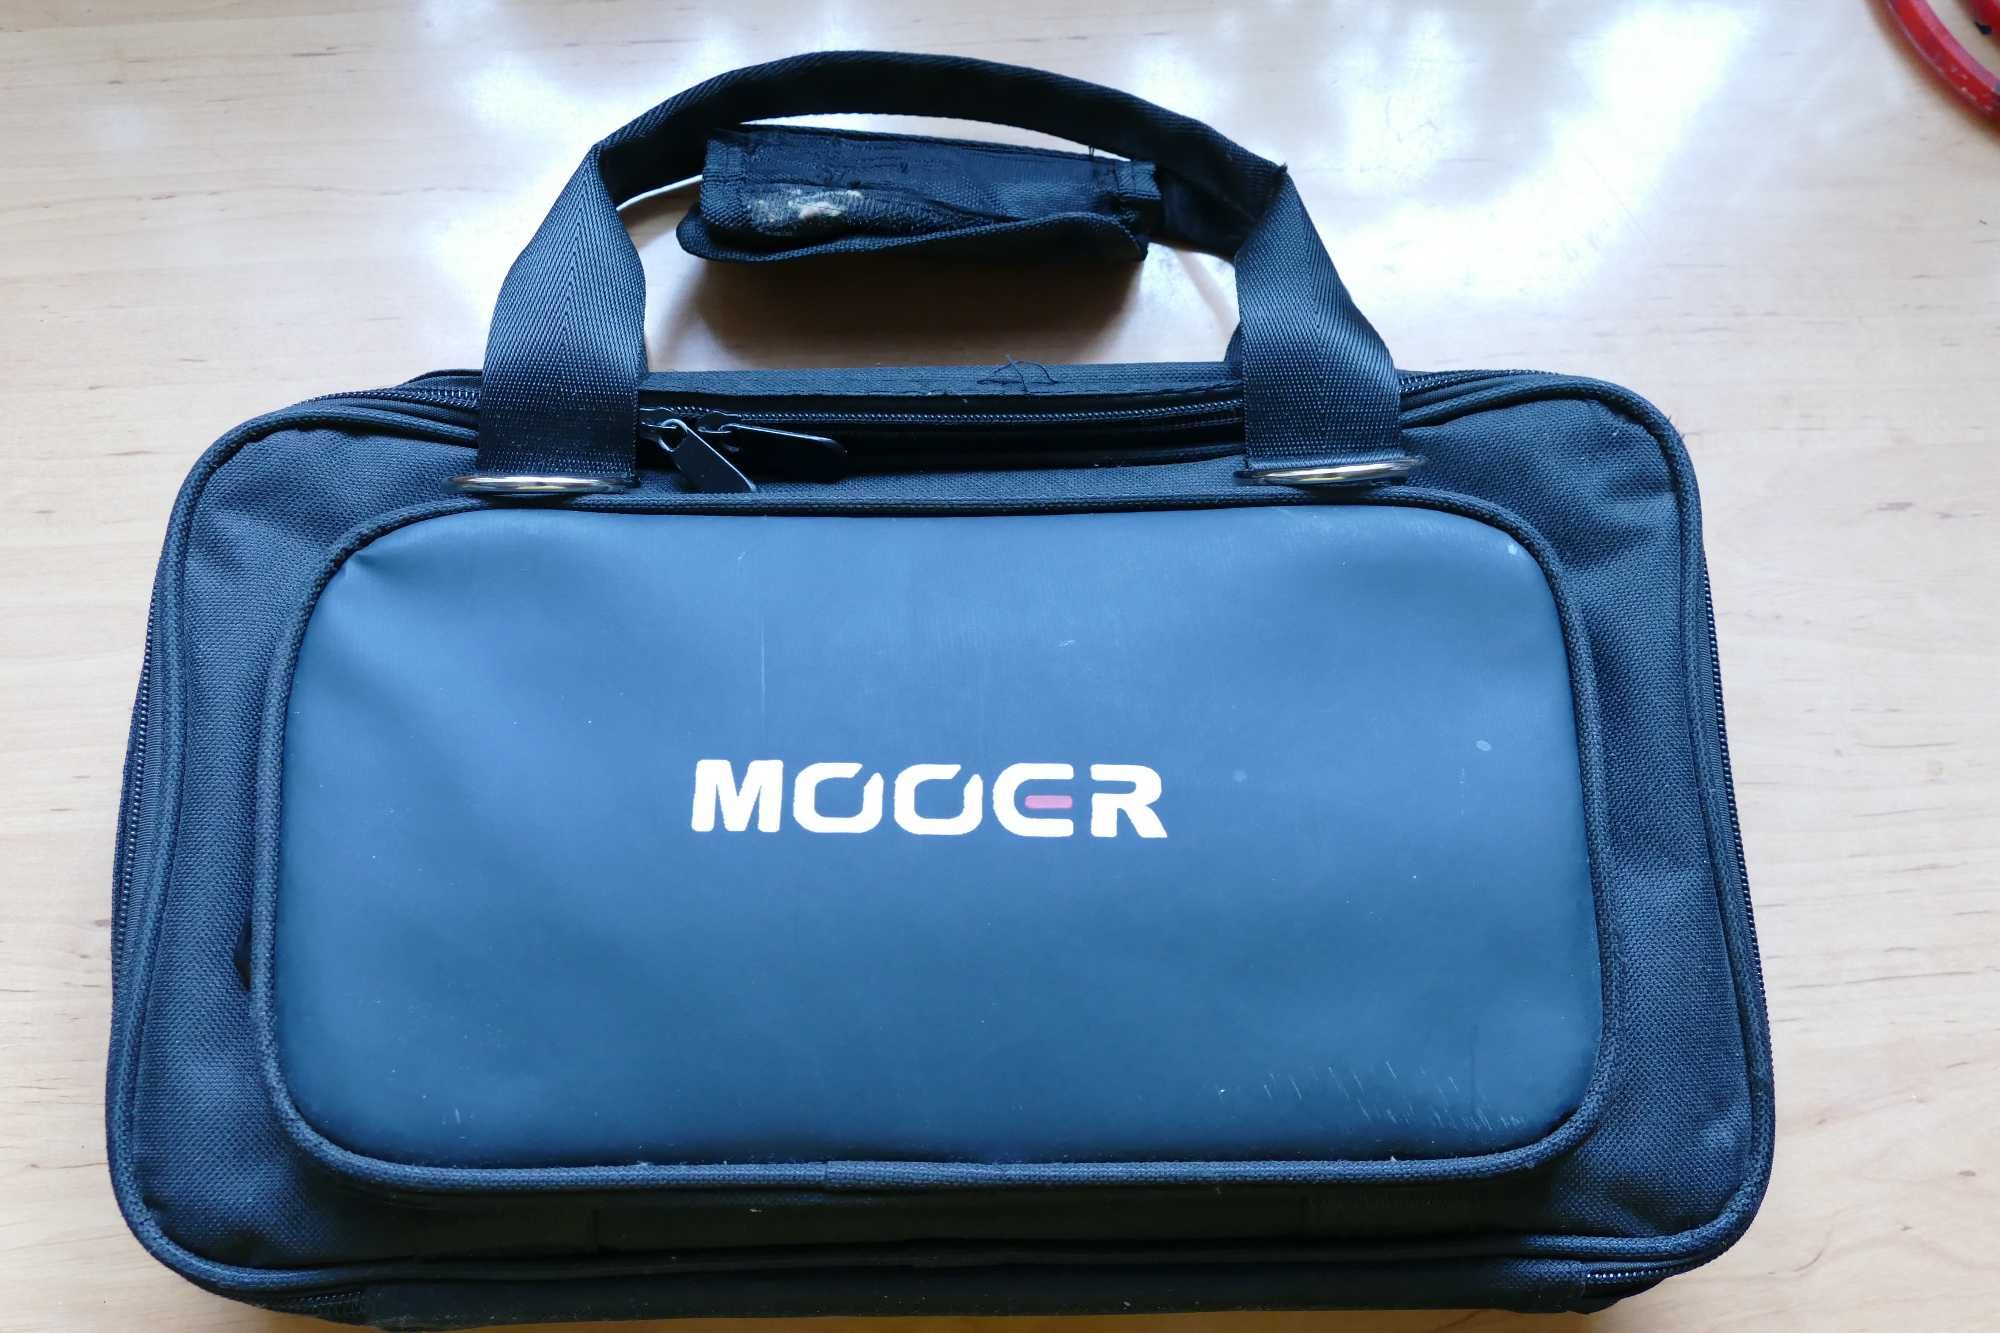 MOOER GE 200 multiefekt gitarowy +Mooer pedal bag.